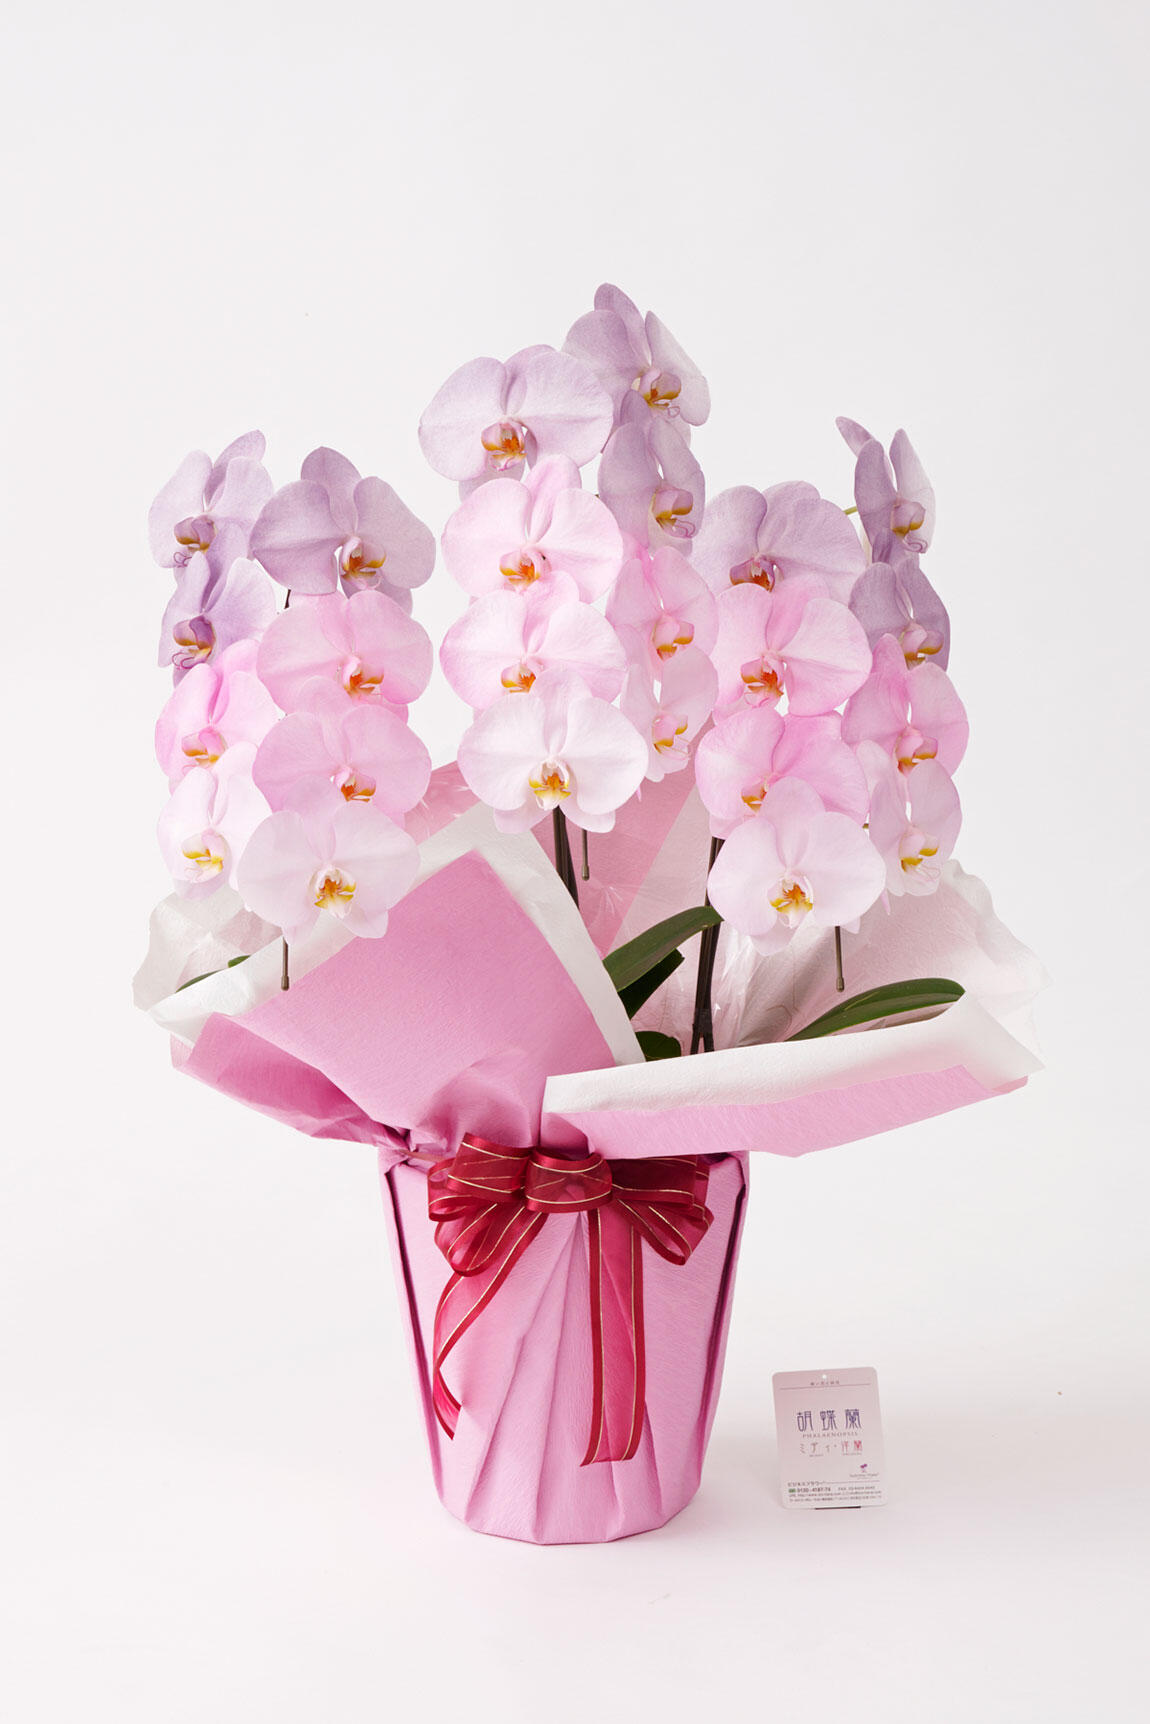 <p>ピンクや紫をコーポレートカラーや店舗コンセプトとしている企業様へのお祝い花として、お洒落なイベントや企画への贈り物として活躍すること間違いなしでしょう。</p>